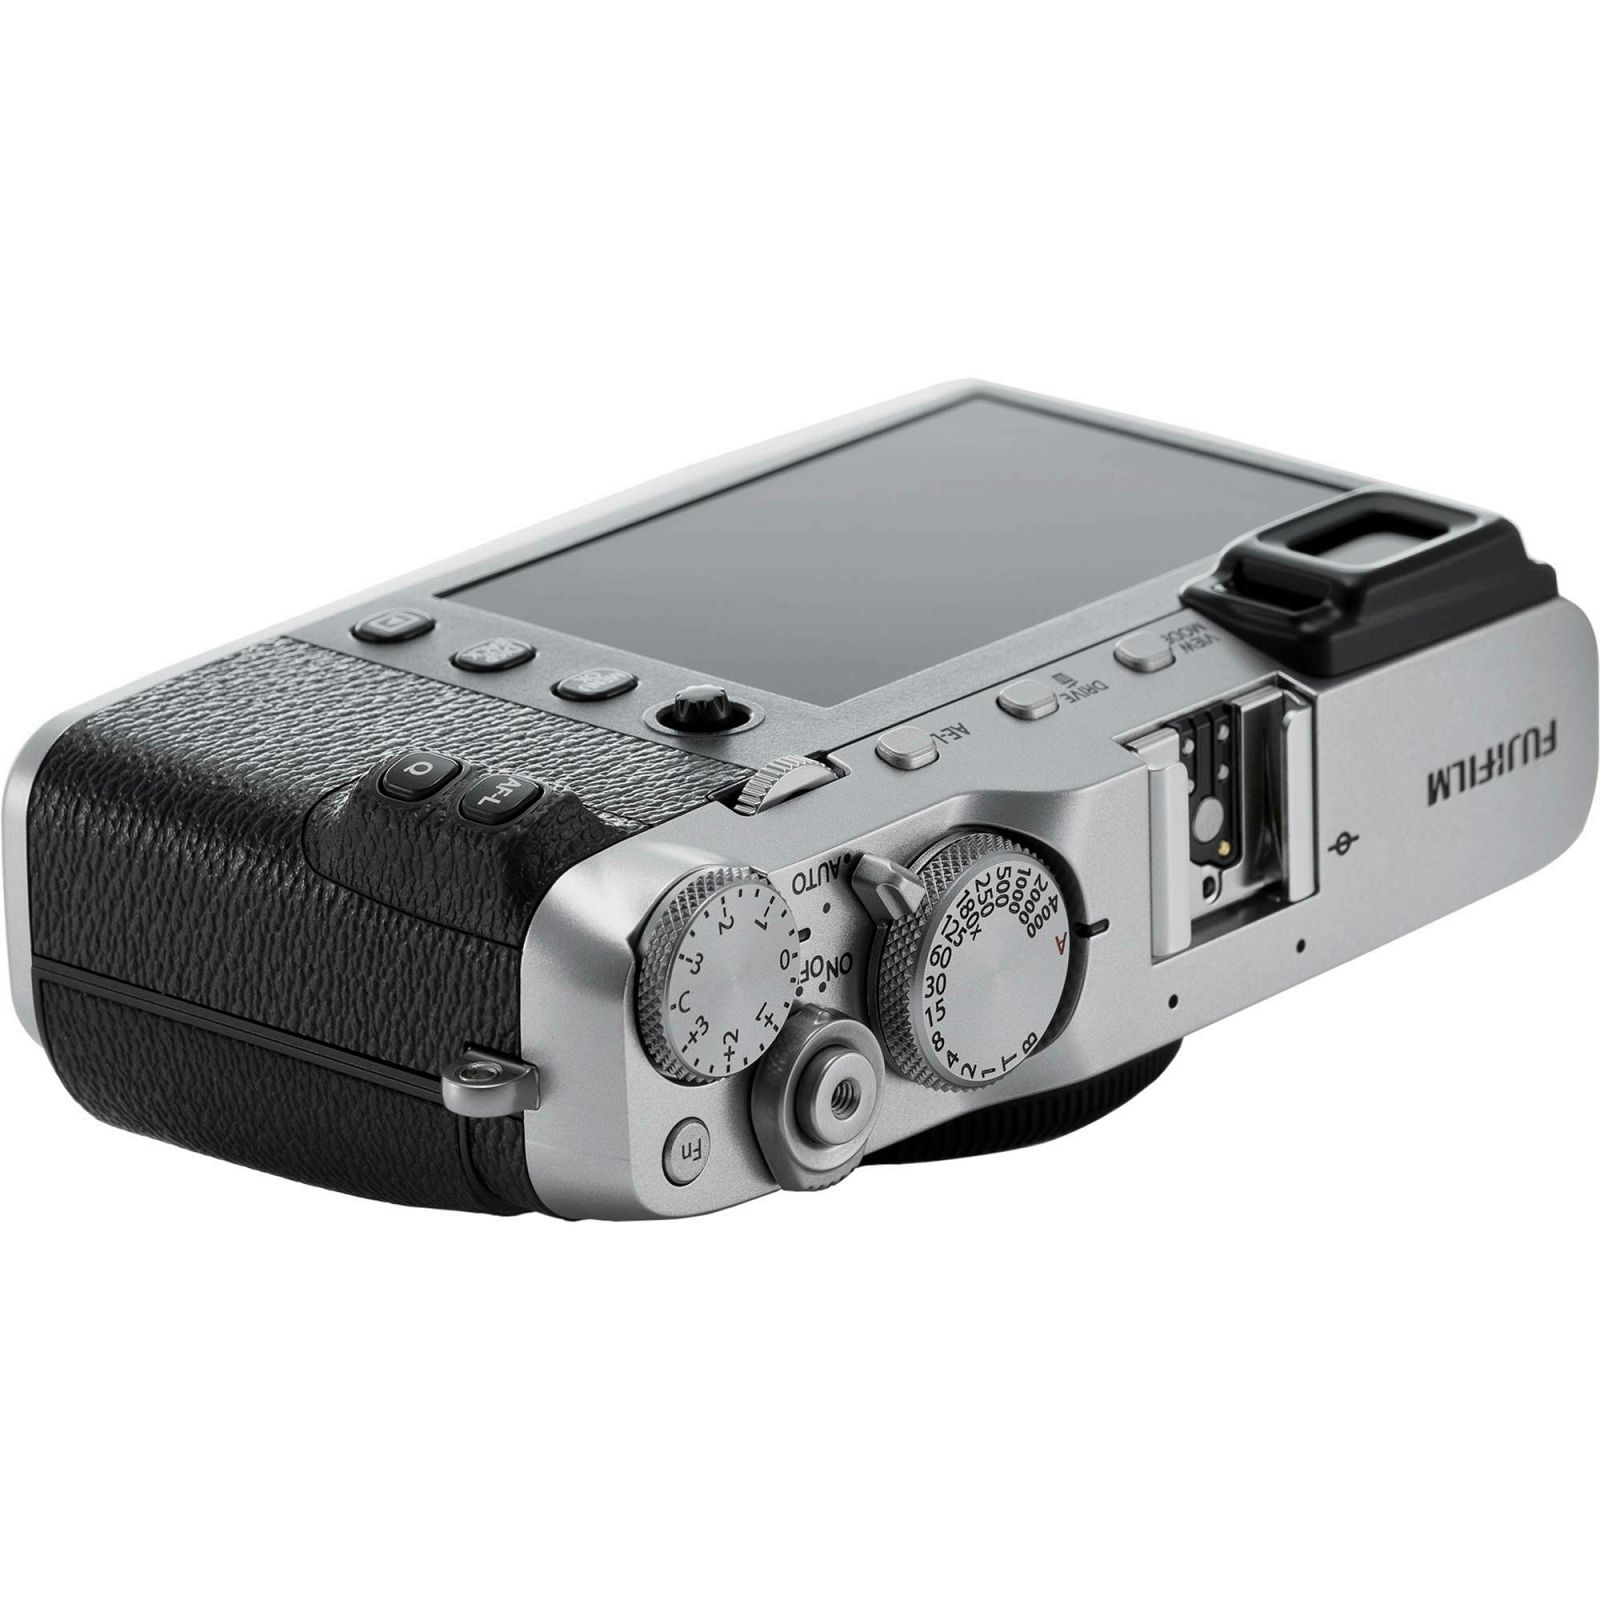 Fujifilm X-E3 Body Silver srebreni Digitalni fotoaparat tijelo Mirrorless camera Fuji Finepix XE3 24Mpx